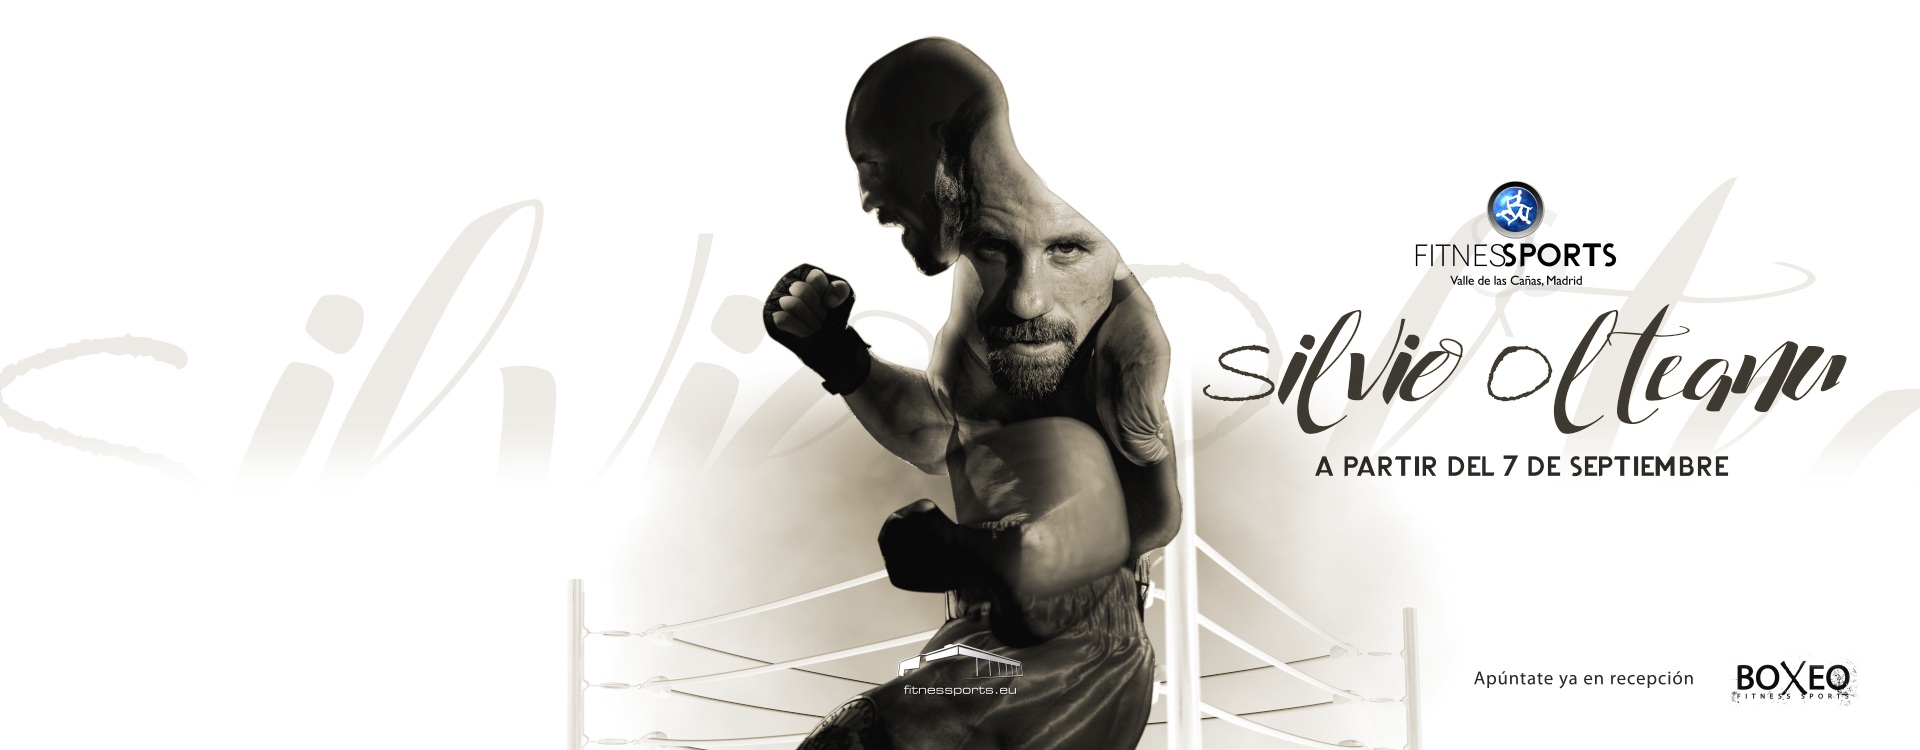 Silvio Olteanu Escuela de Boxeo en Madrid Fitness Sports Valle las Cañas by PerfectPixel Publicidad 